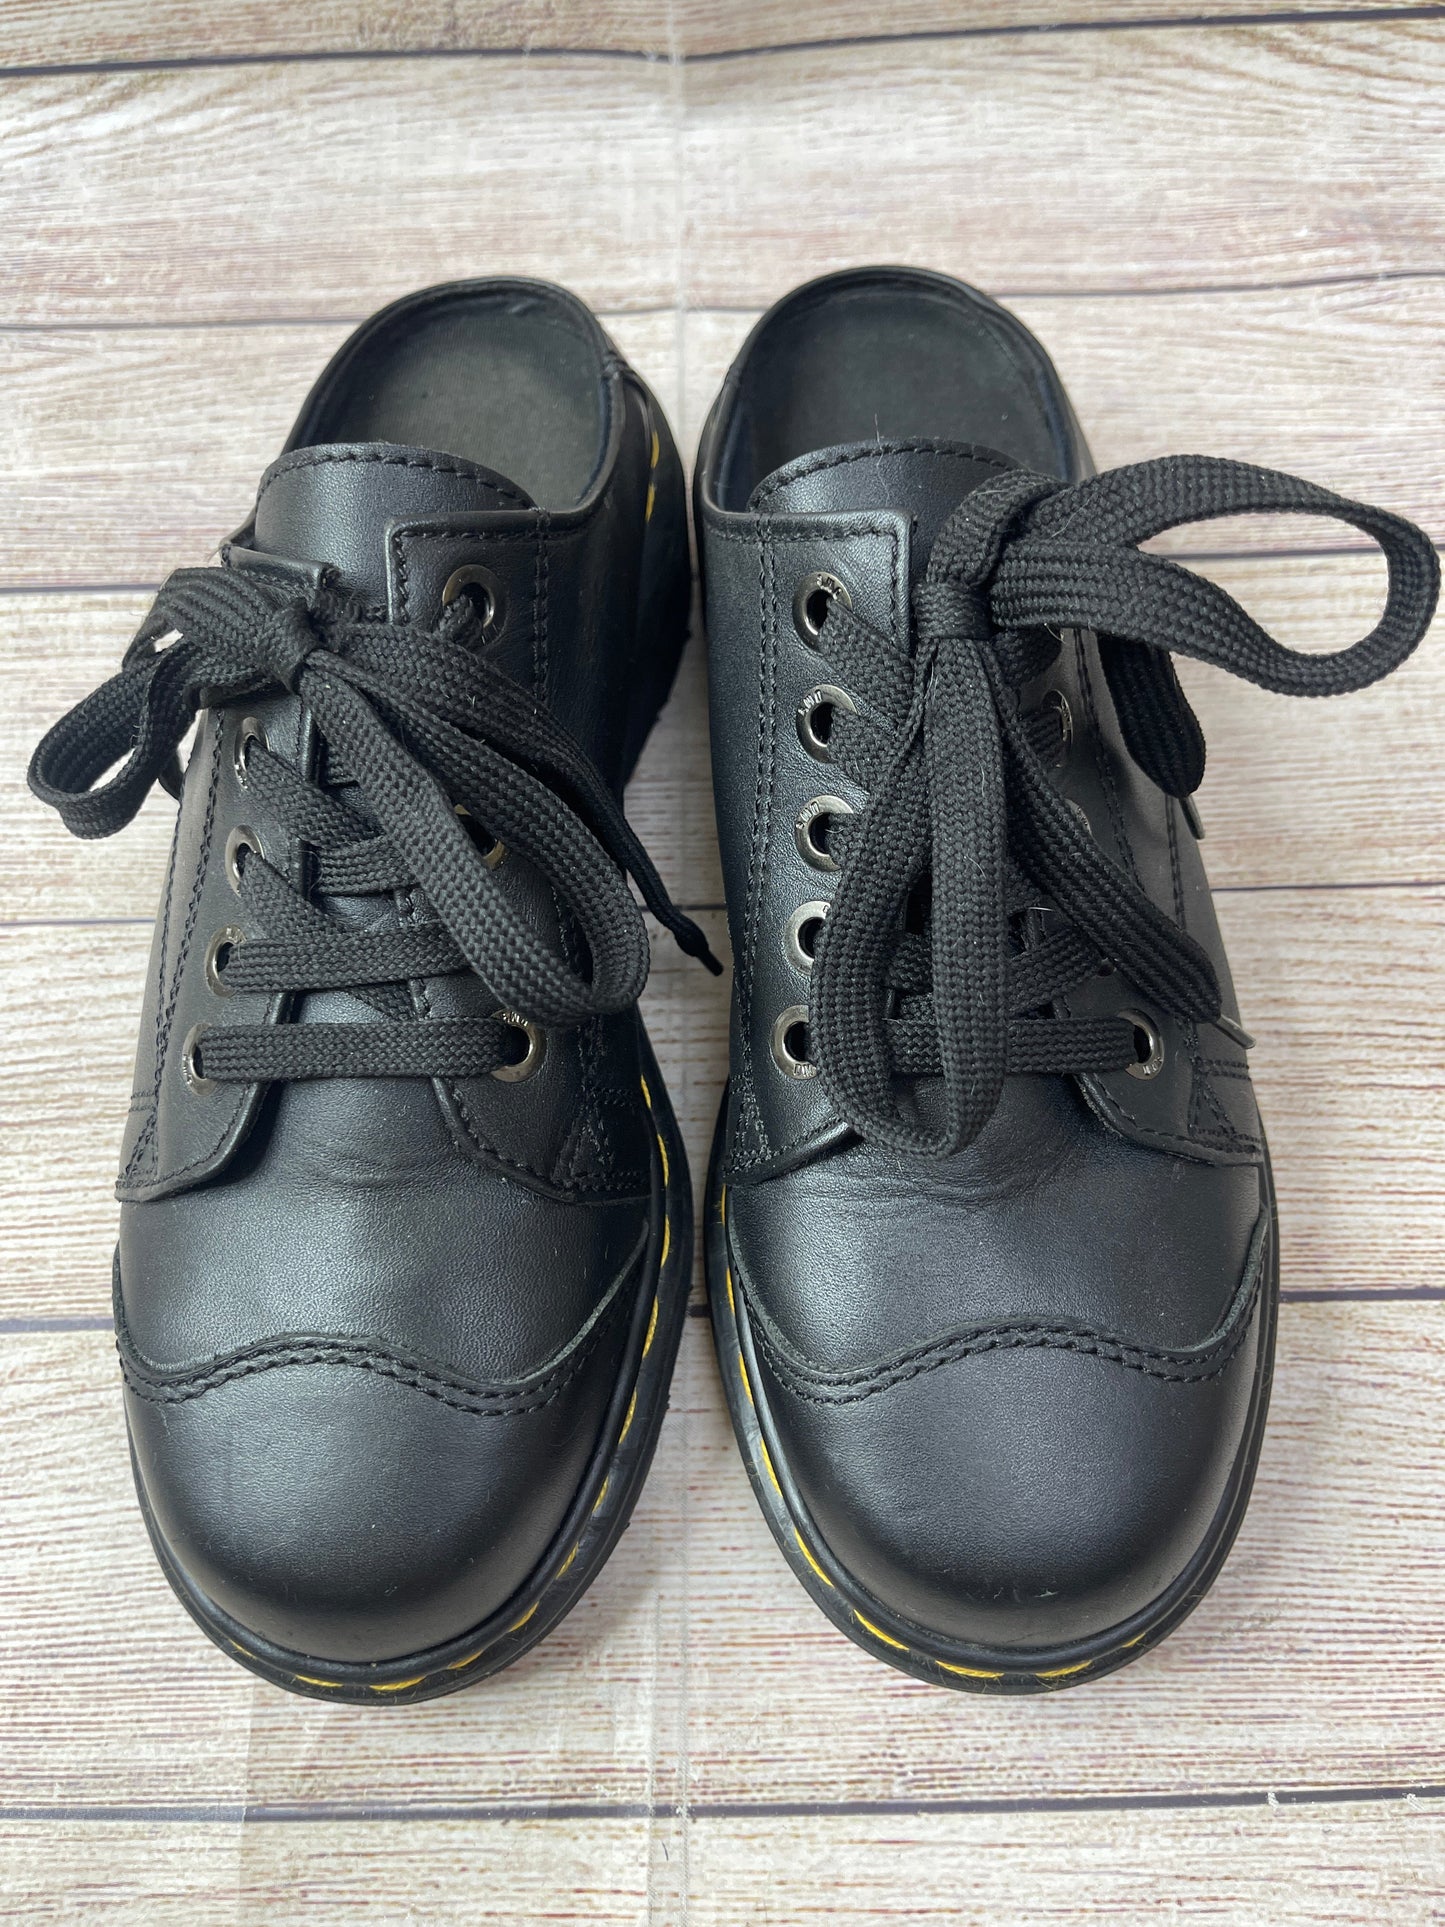 Black Shoes Flats Dr Martens, Size 9